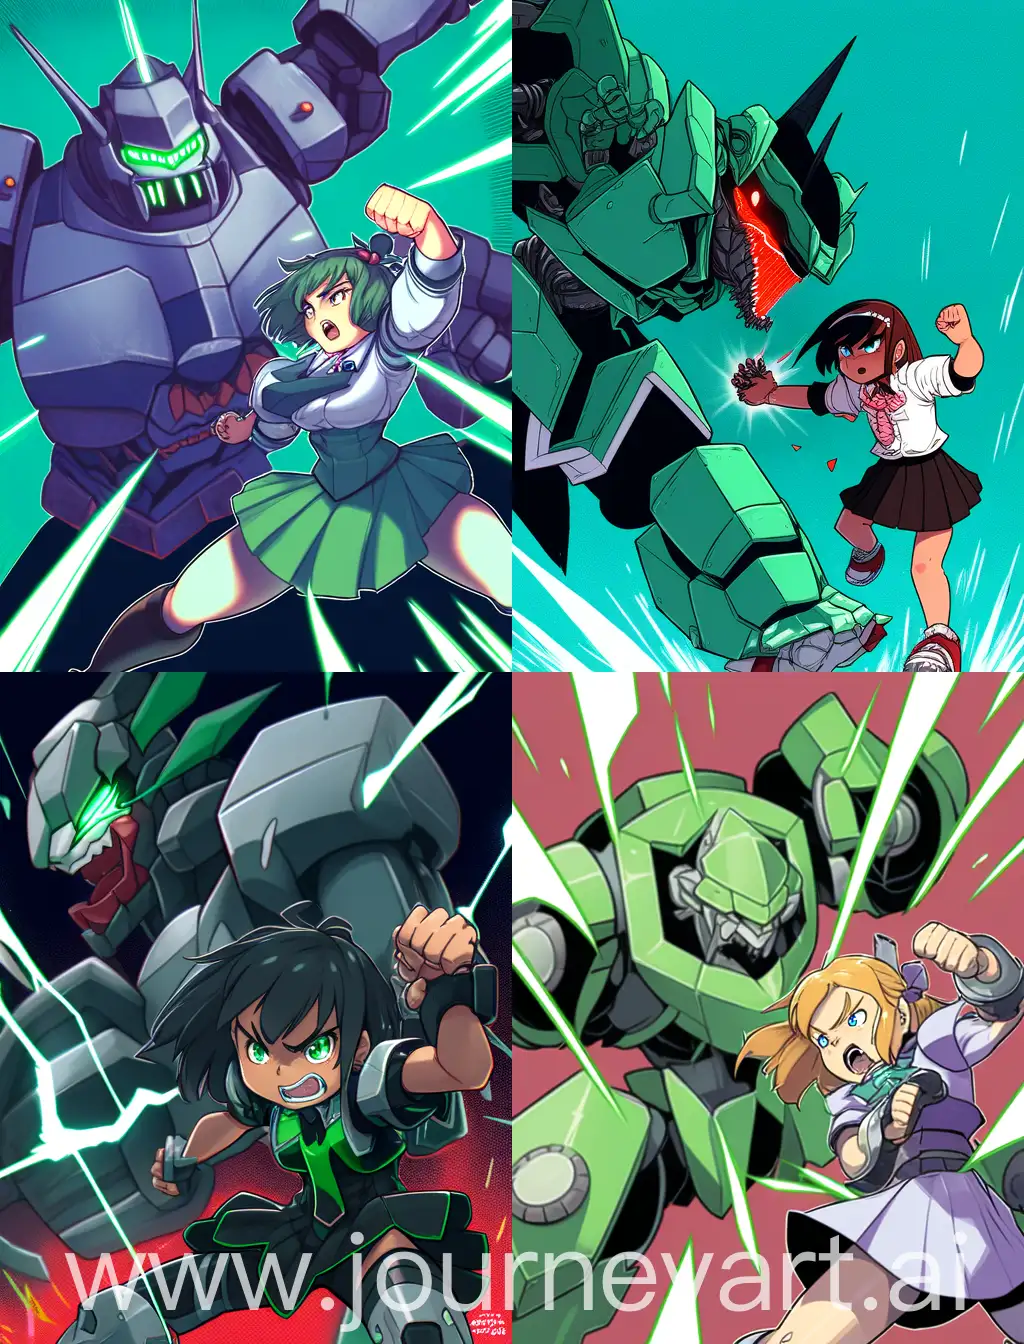 Fierce-Girl-Battles-Robot-Against-Vibrant-Green-Backdrop